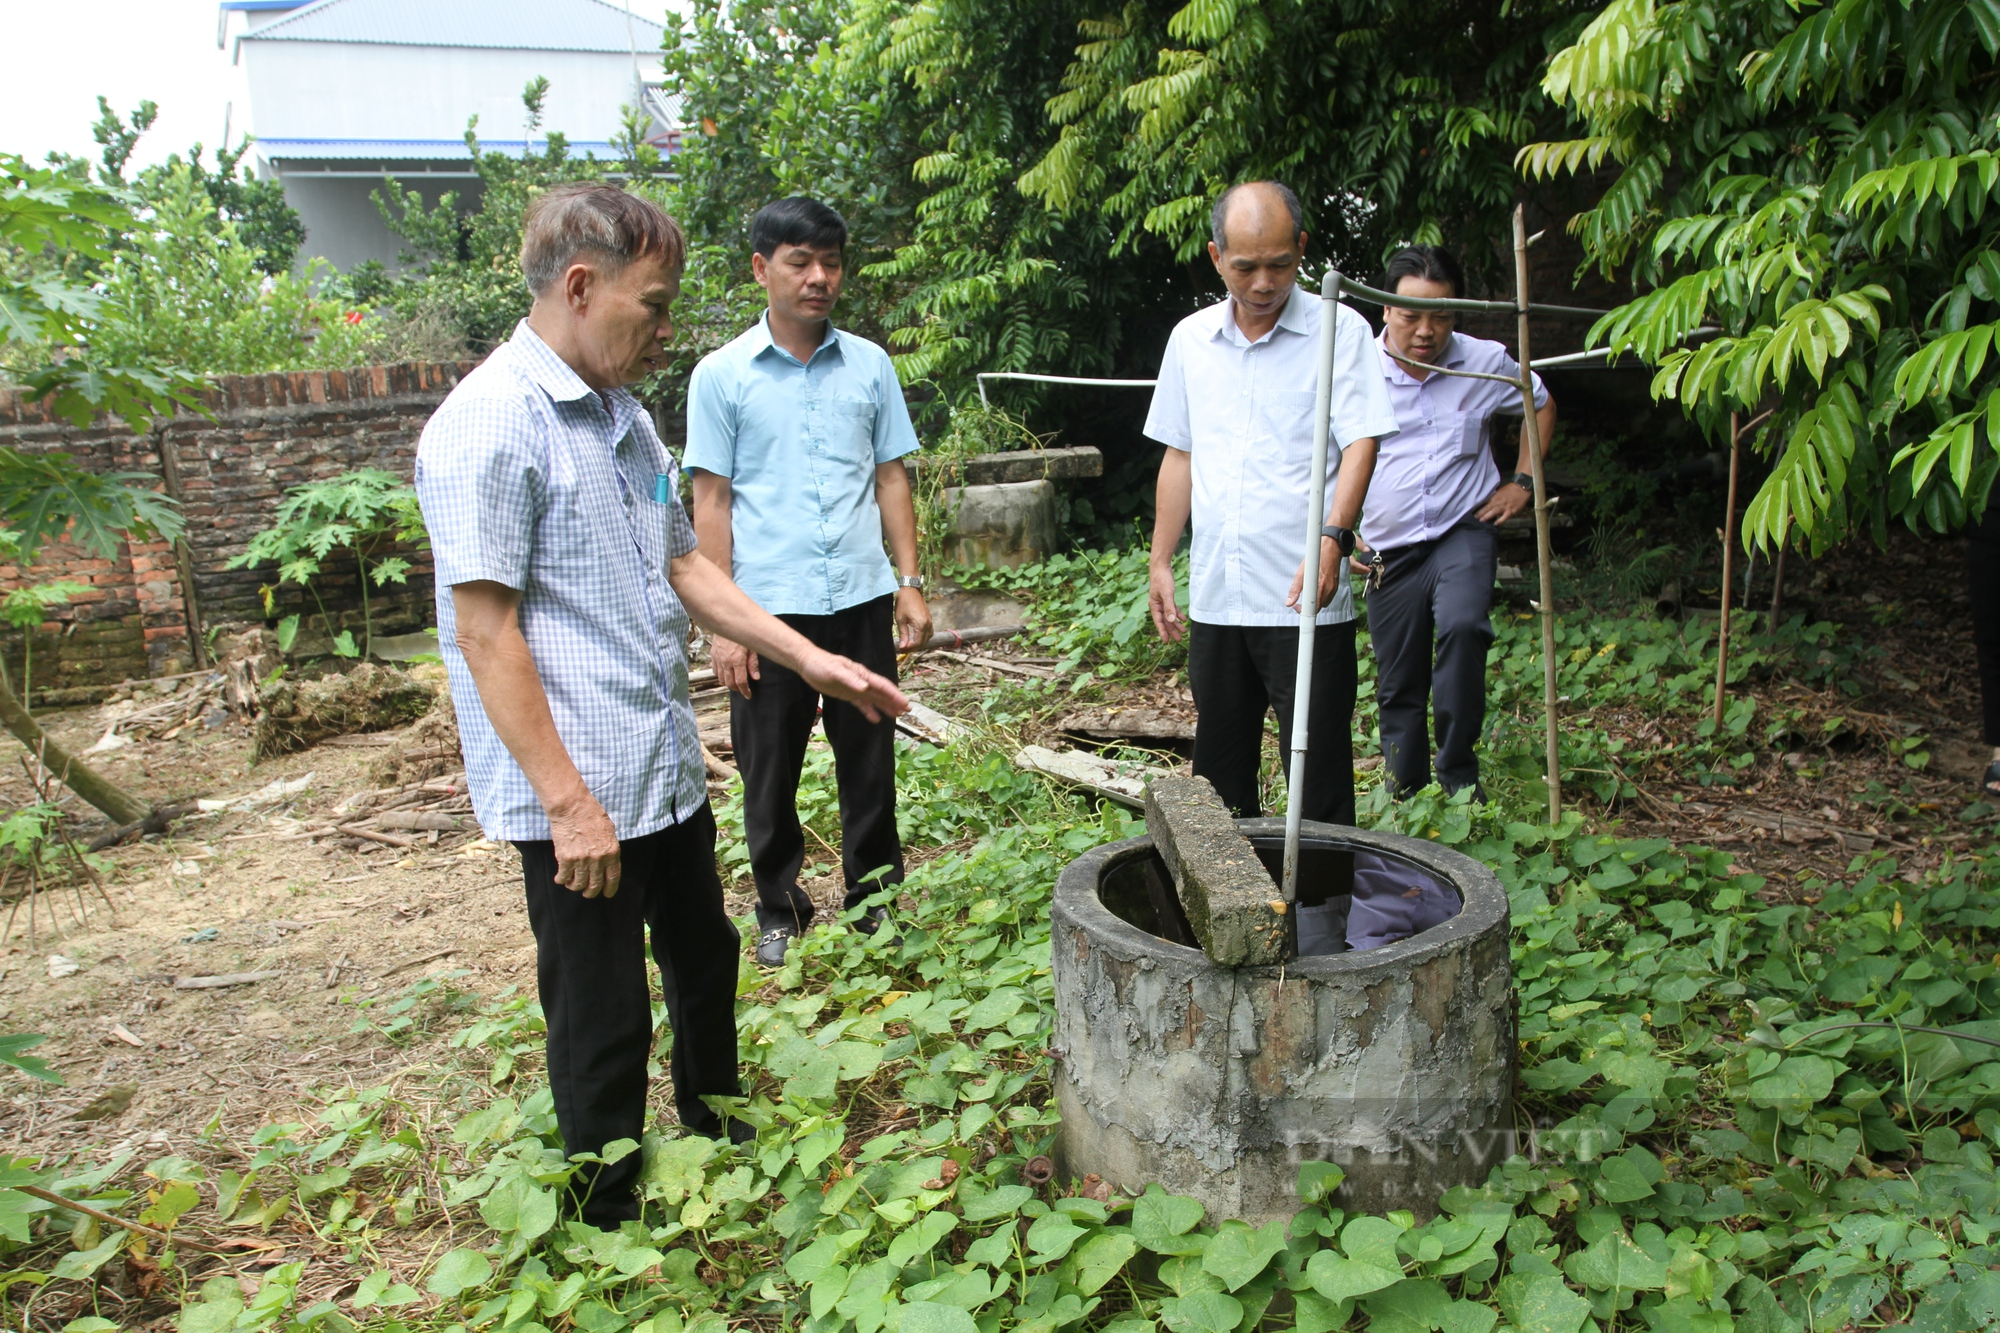 Bí quyết xử lý nước thải trong chăn nuôi không gây ô nhiễm môi trường của ông nông dân Thái Nguyên - Ảnh 3.